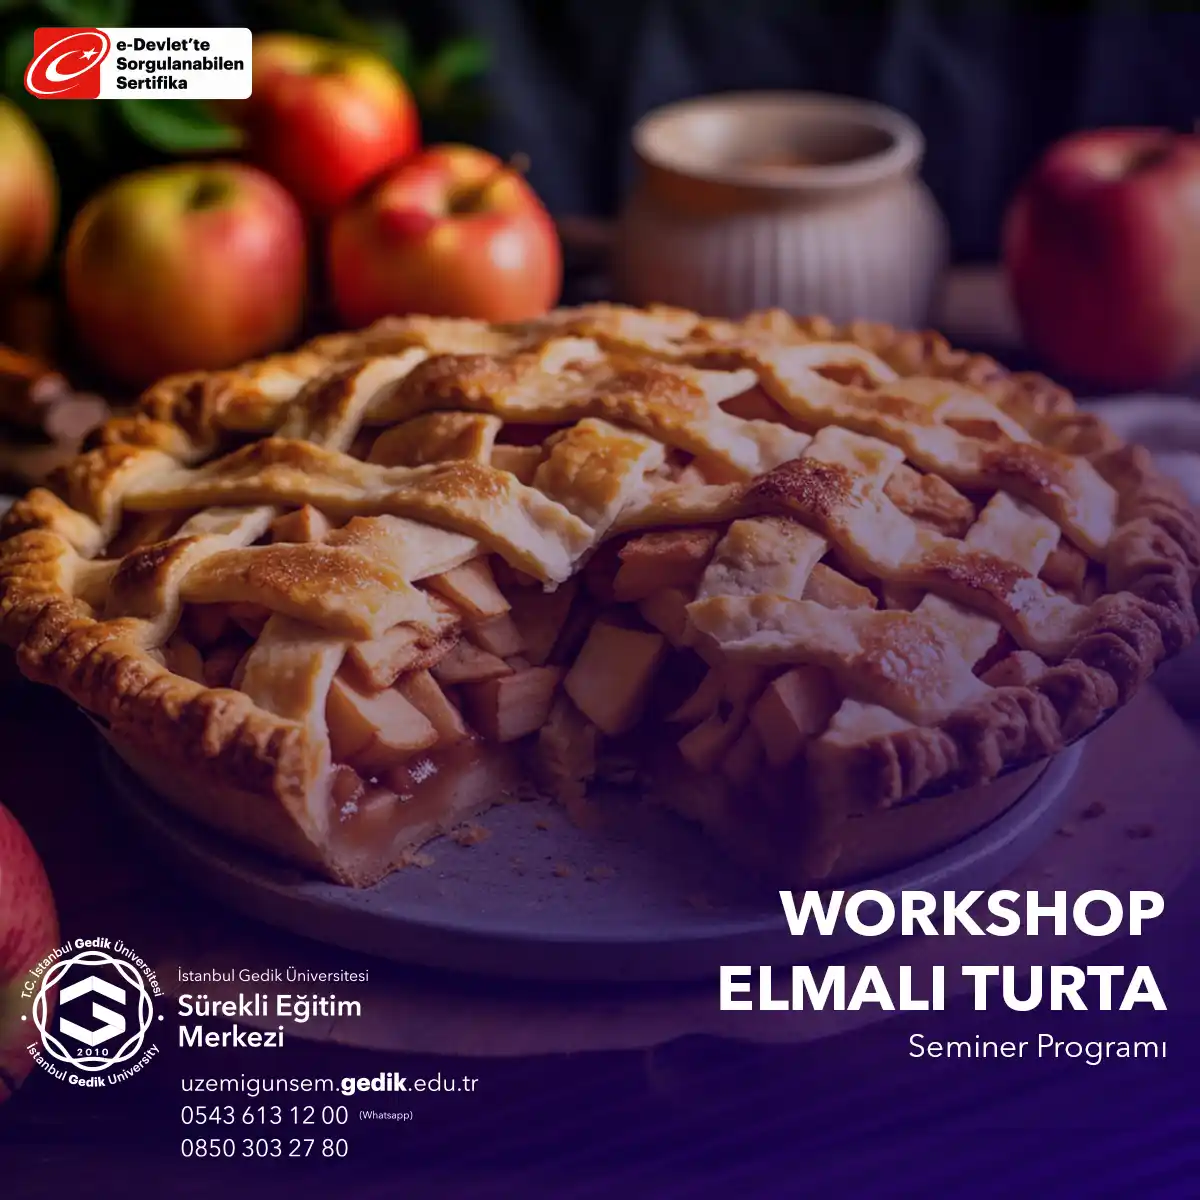 Bu seminer, katılımcılara elmalı turta yapma sürecini öğretir ve genellikle lezzetli sonuçları tadabilme fırsatı sunar.